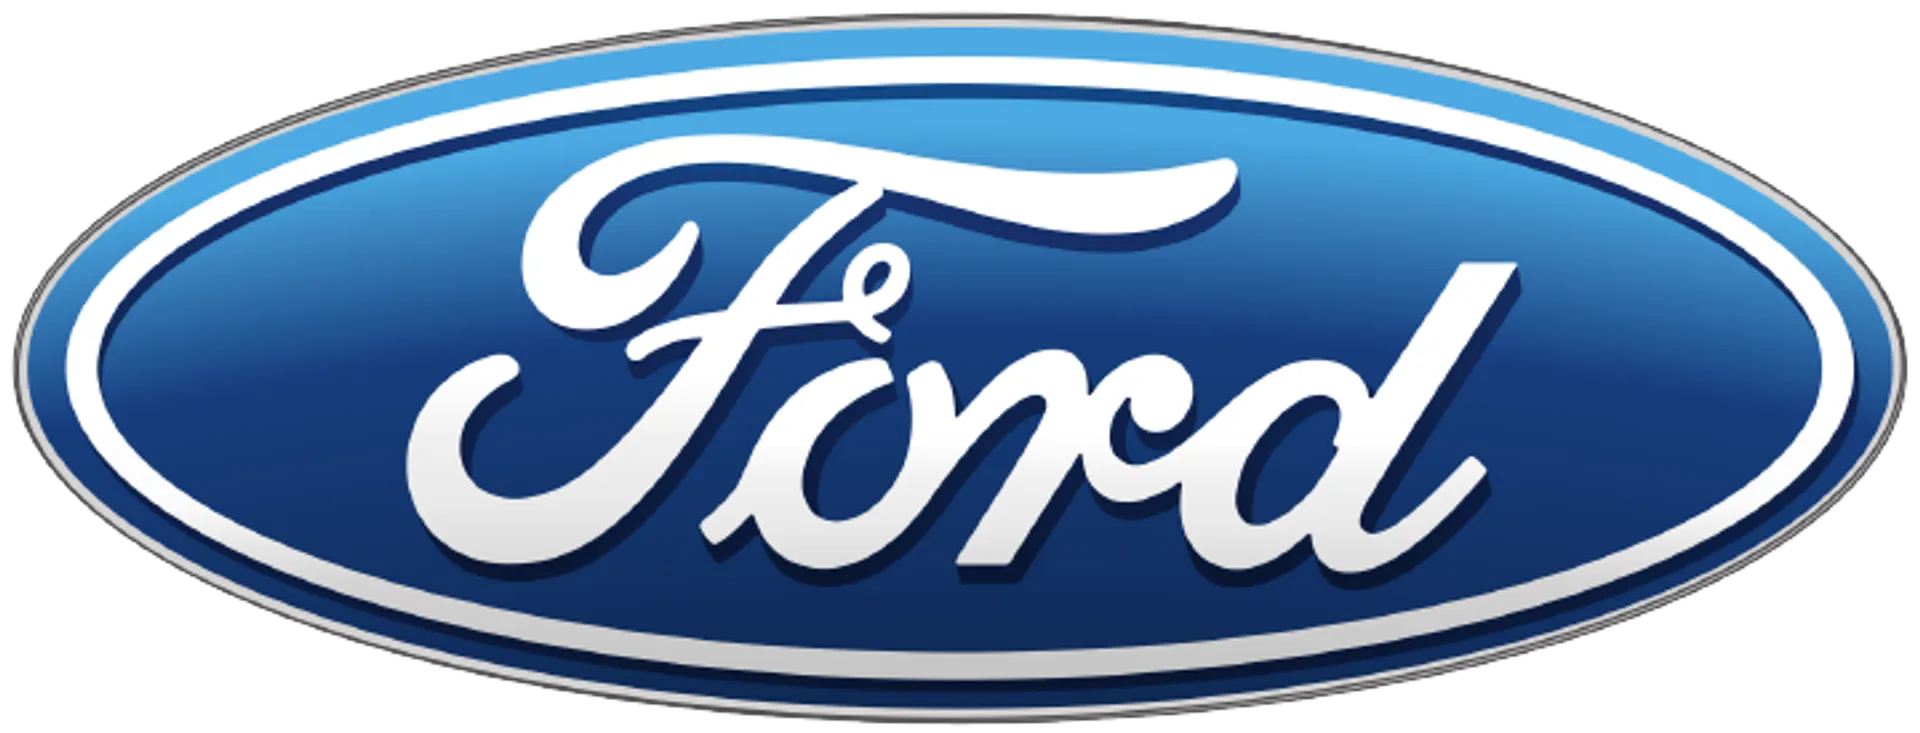 FORD logo de folhetos